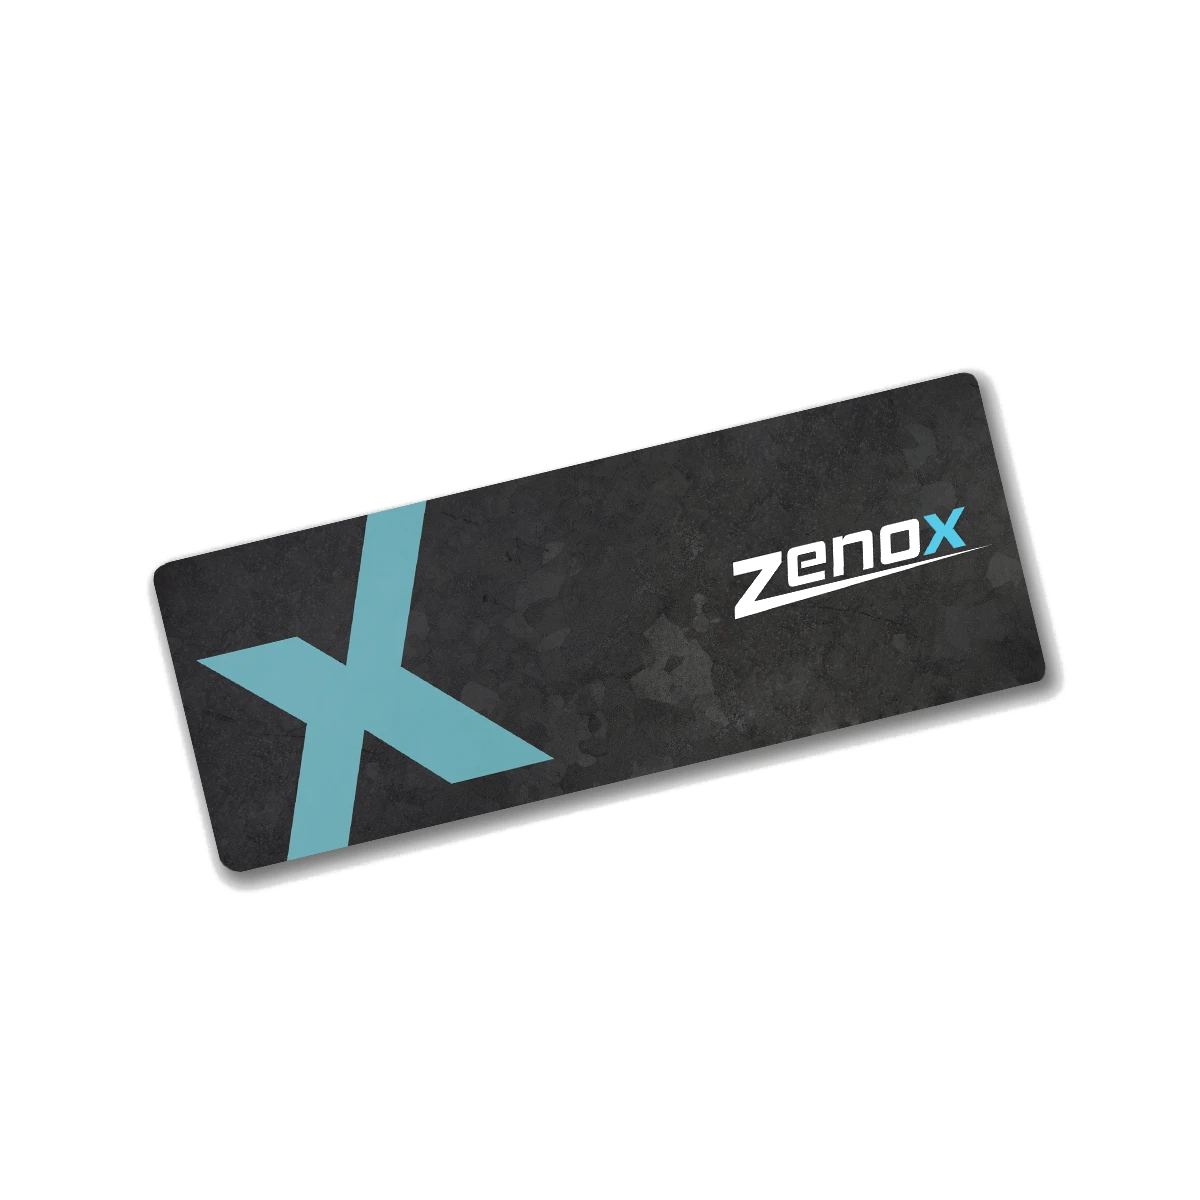 Zenox  Gaming Mouse Pad 布質滑鼠墊 (30 x 80cm)